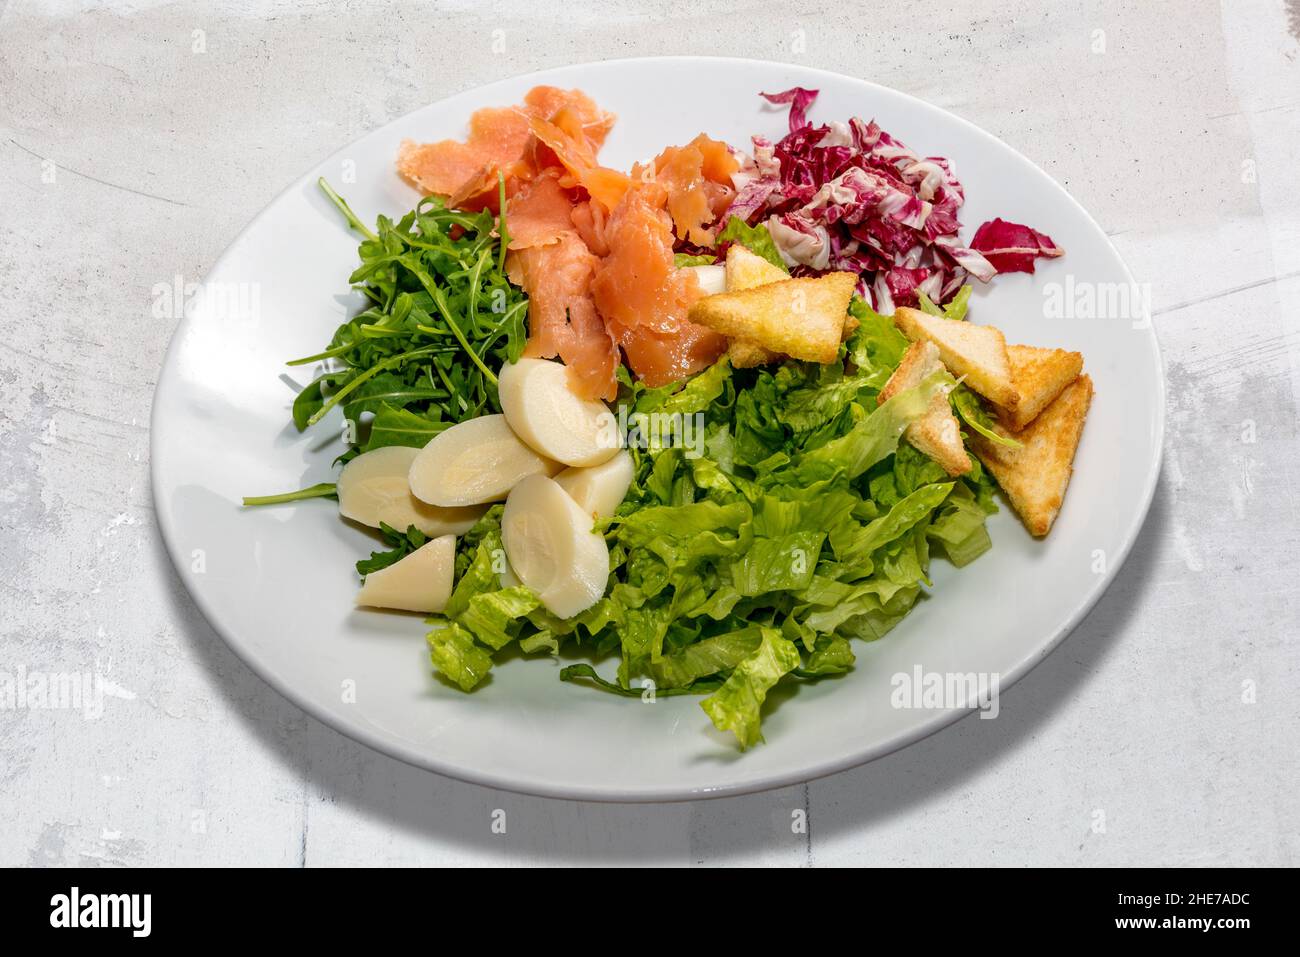 Salade mixte avec saumon fumé, laitue, roquette, chicorée rouge, coeur de palmier et croûtons.Dans un plat blanc dans la vue de dessus Banque D'Images